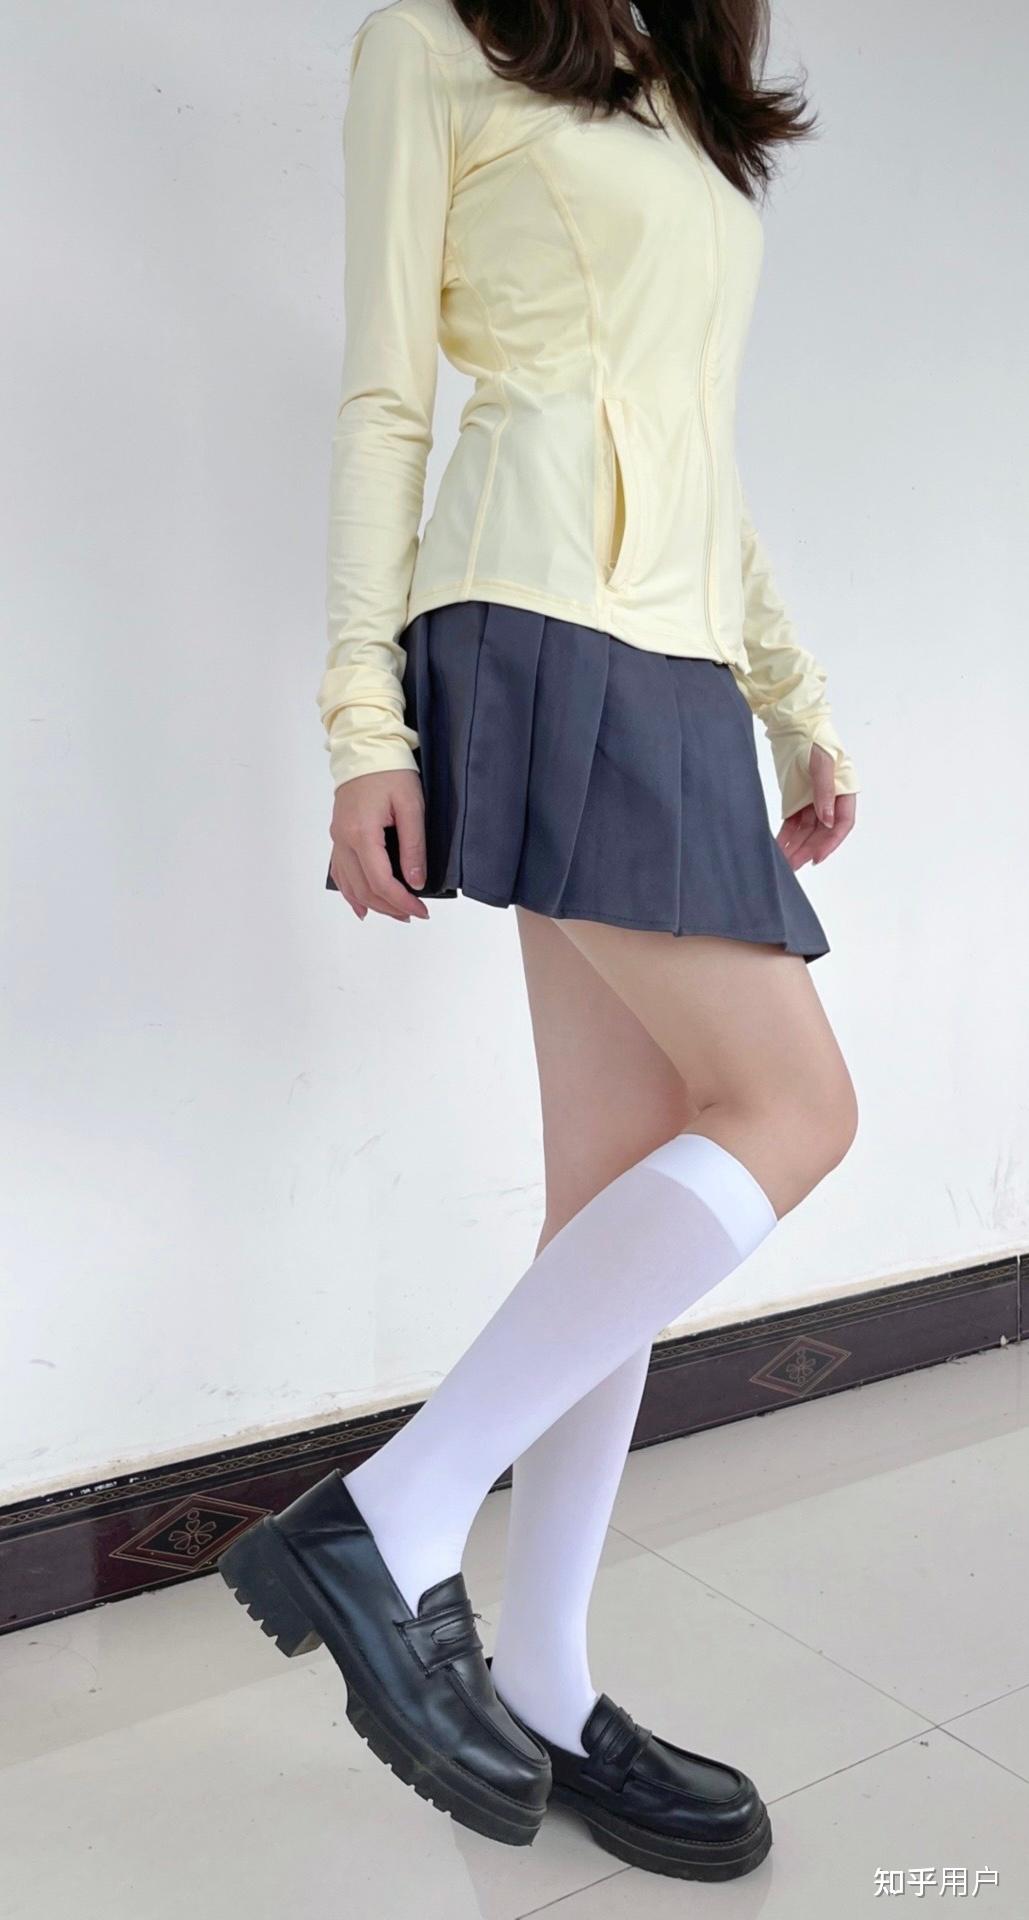 小学生白色裤袜-图库-五毛网